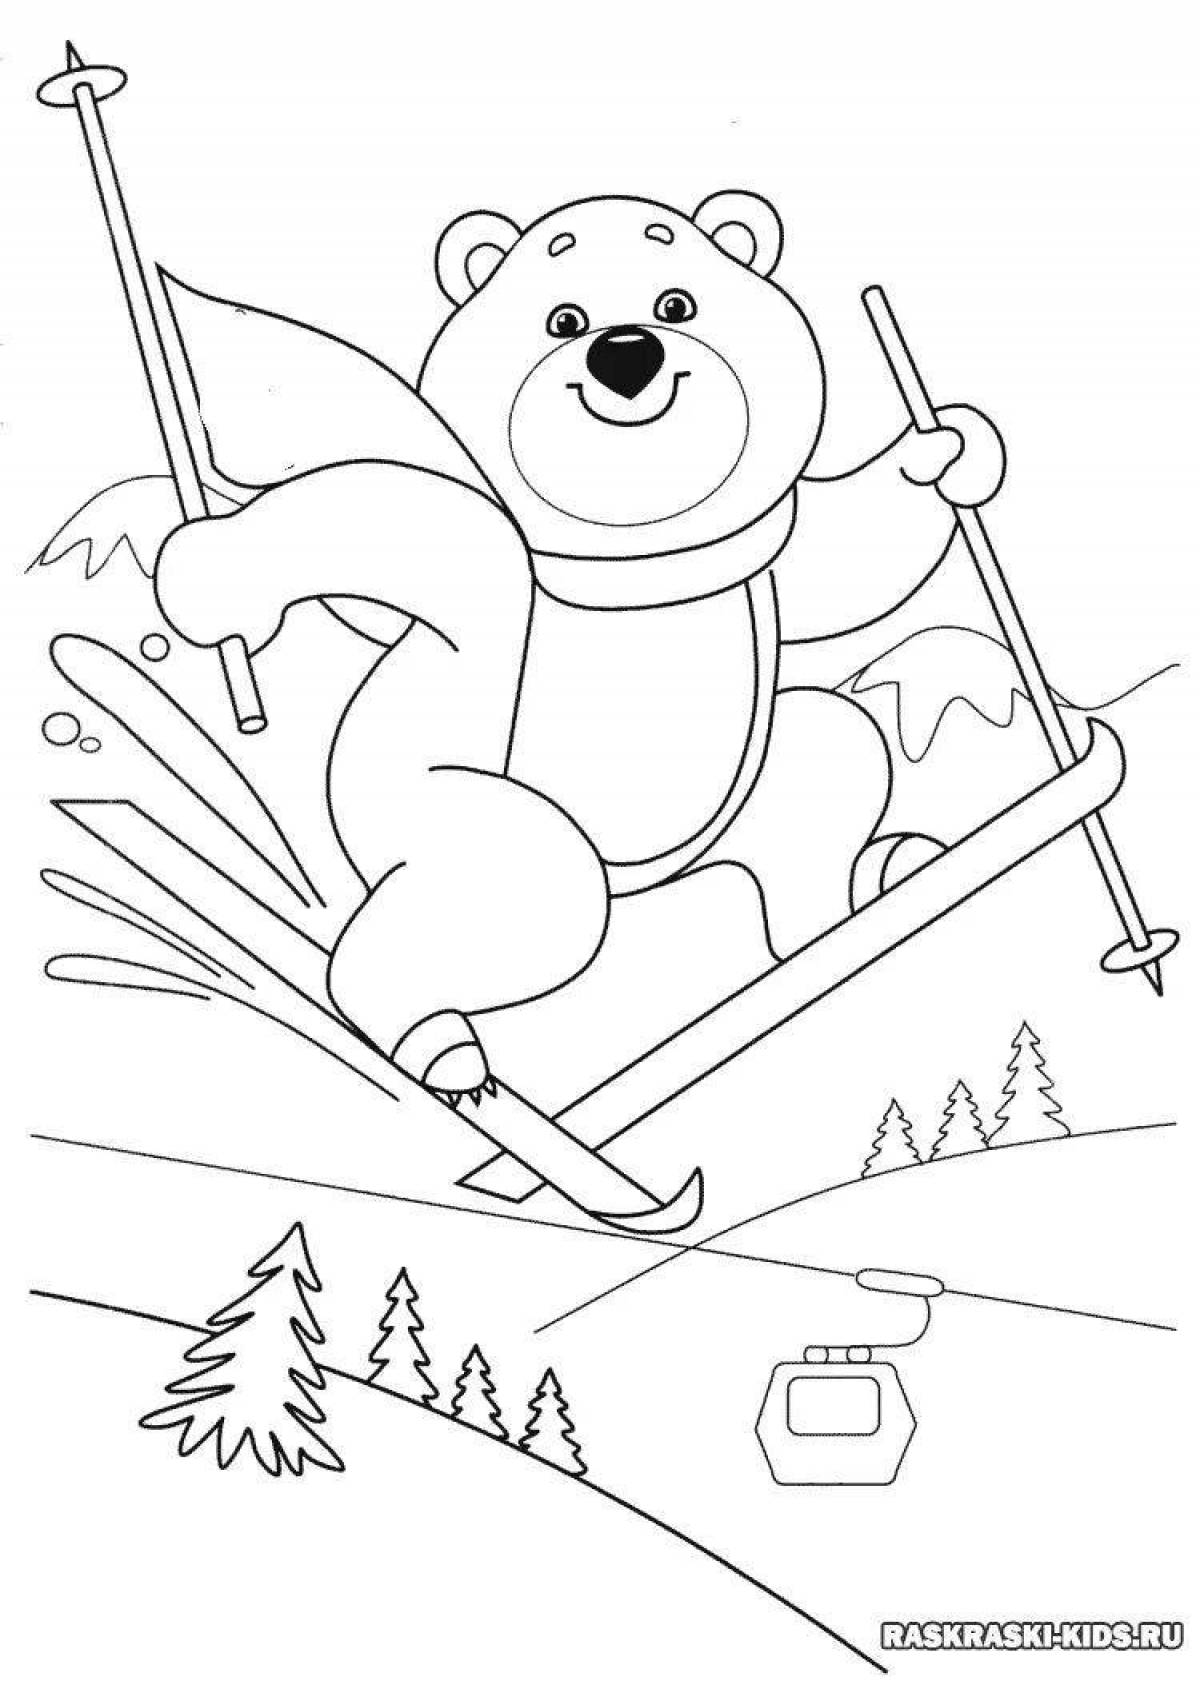 Раскраска энергичный олимпийский медведь